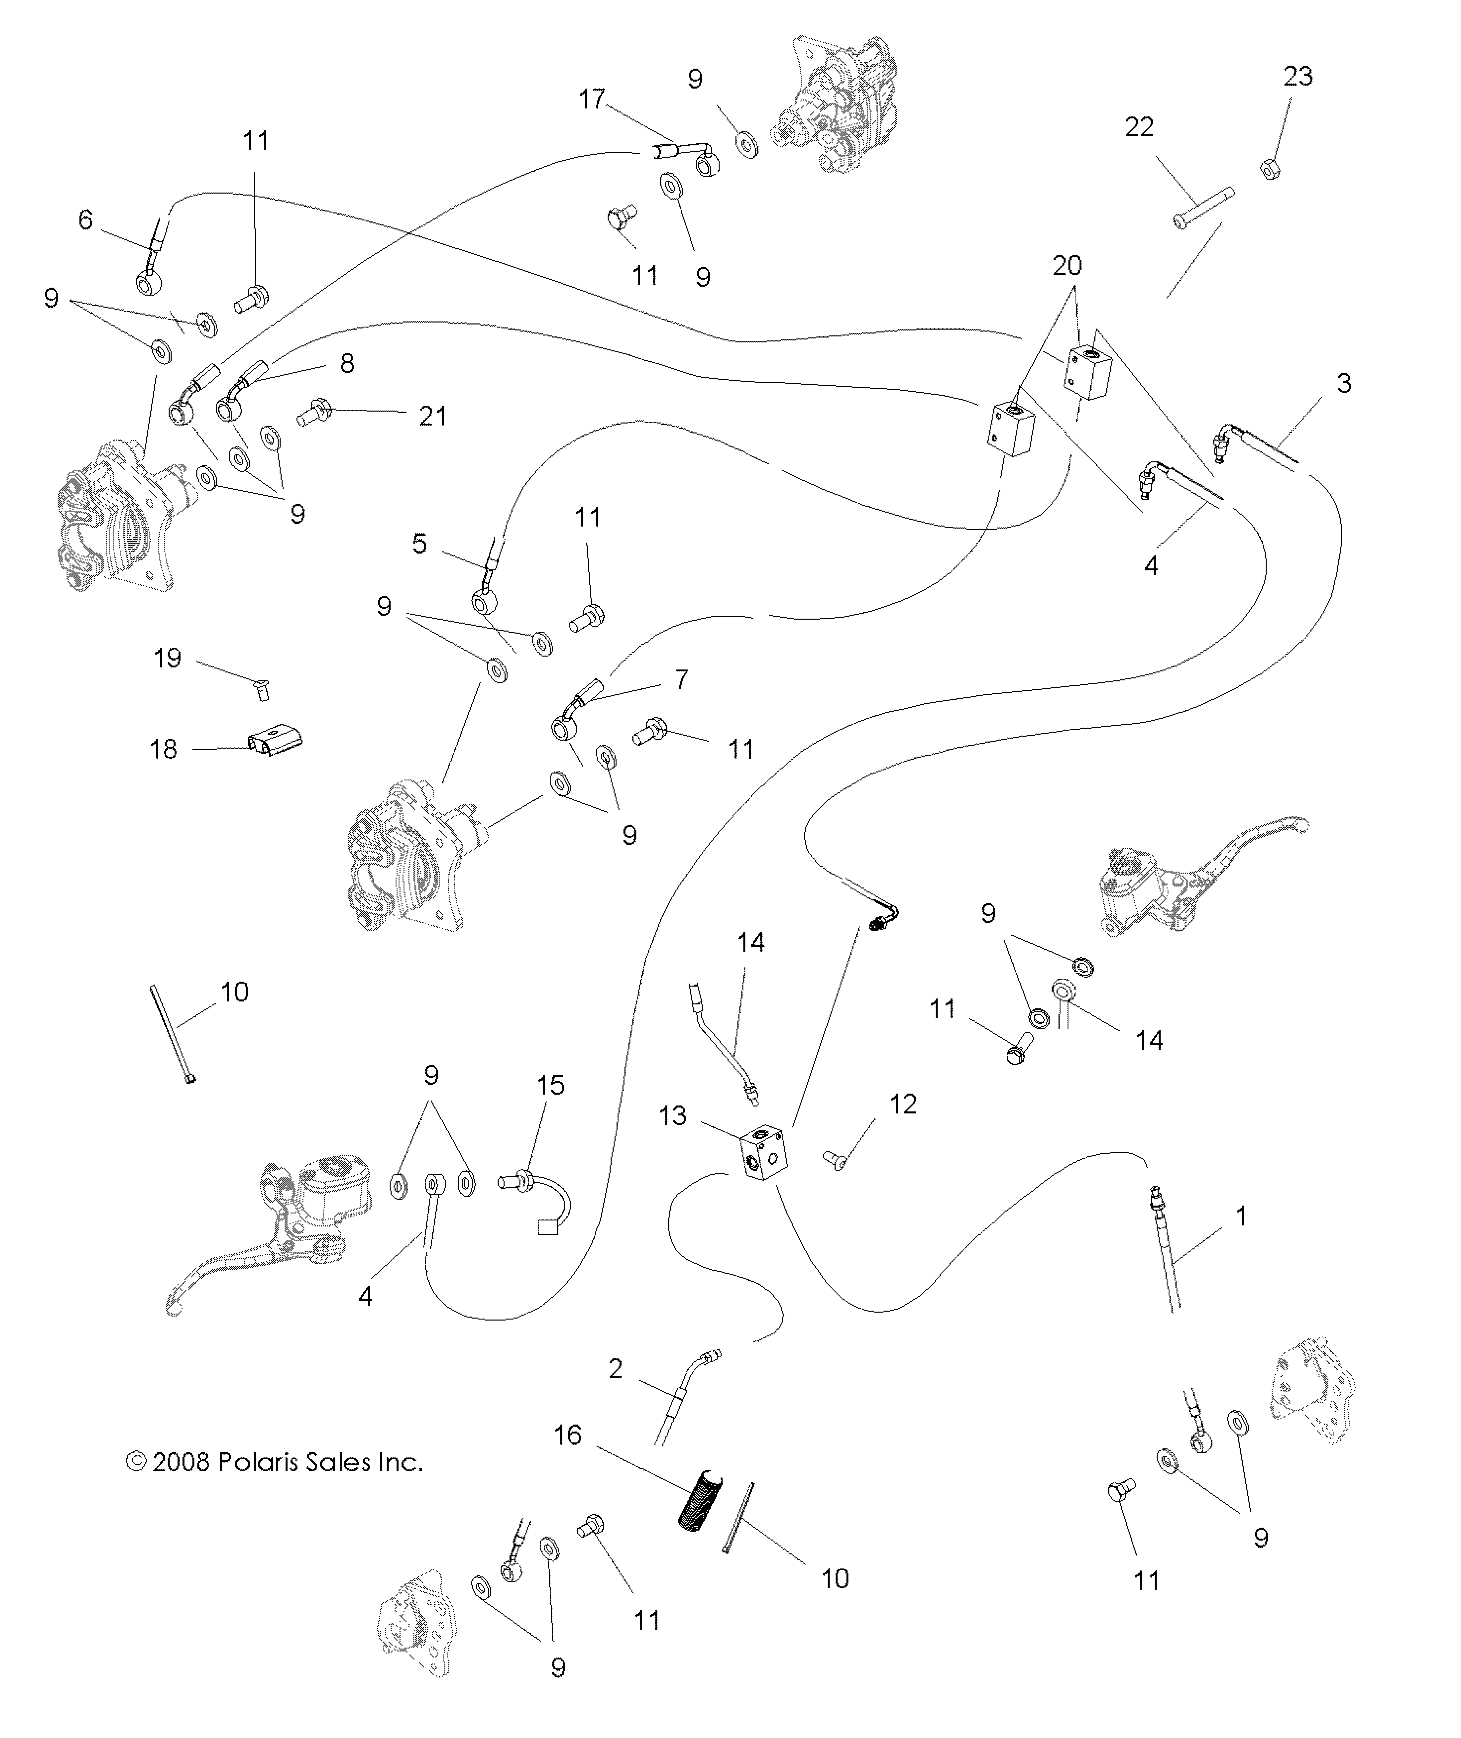 Foto diagrama Polaris que contem a peça 4010758